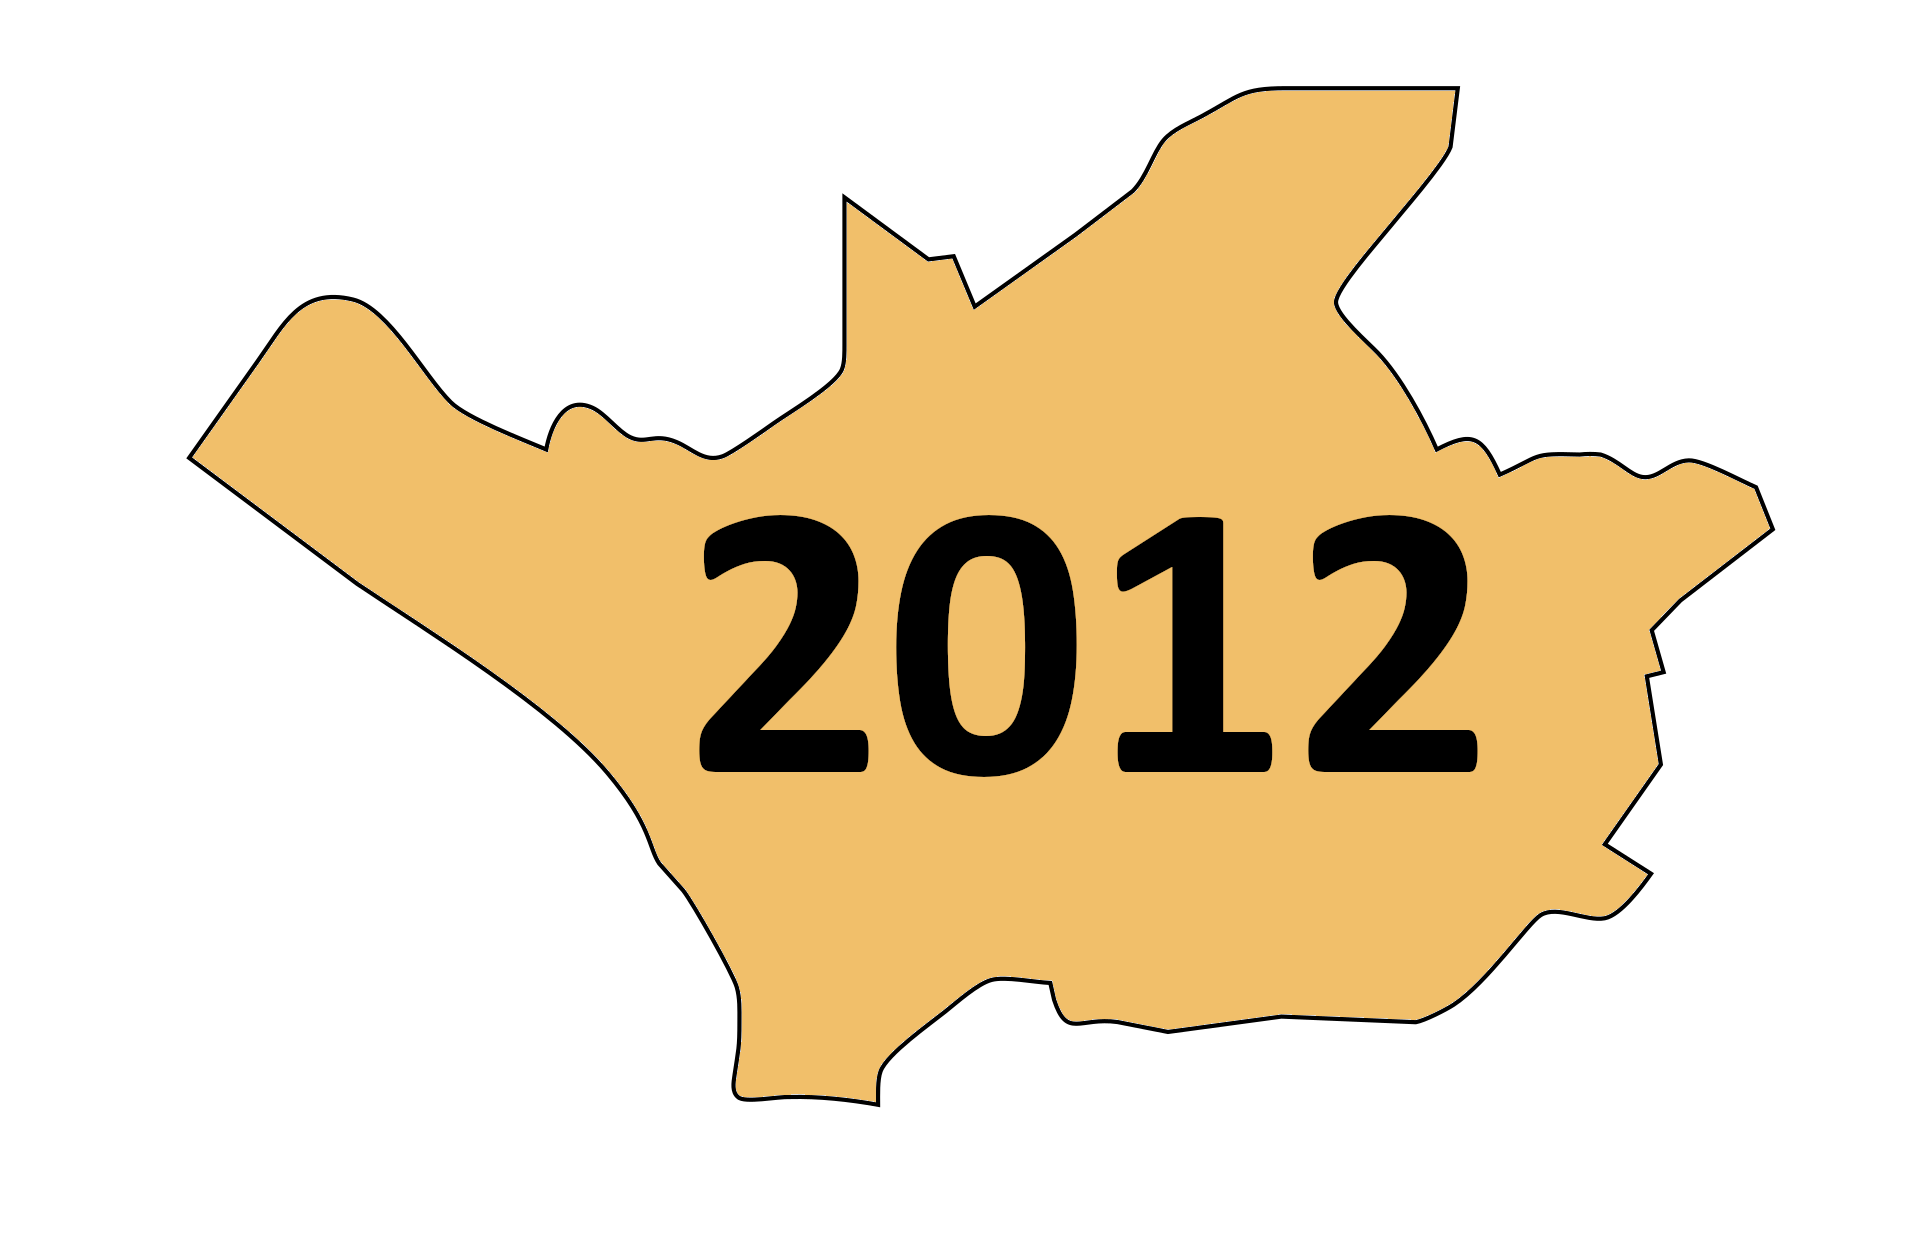 05.10.2012: Rund 20 Bürger informierten sich über neue Schlacken-Aufbereitungsanlage von AVEA und CURRENTA